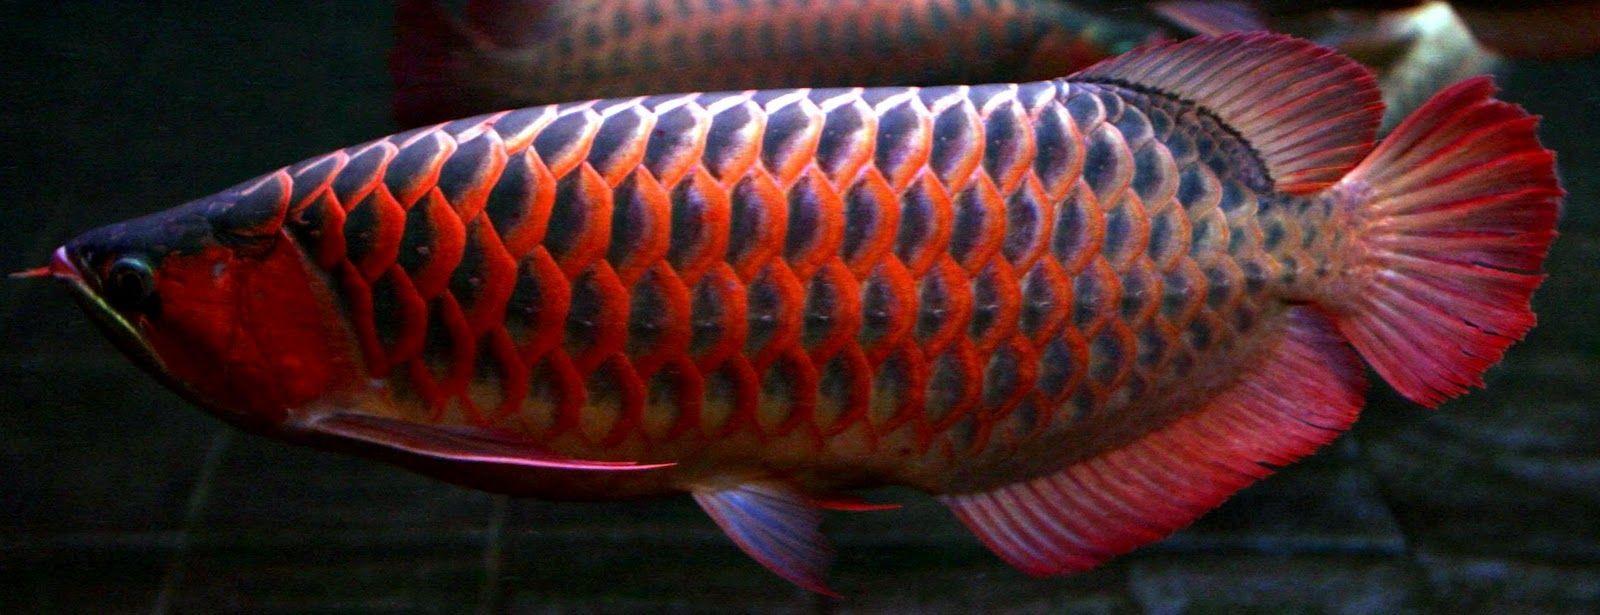 Dragon Fish Arowana Beauty 2